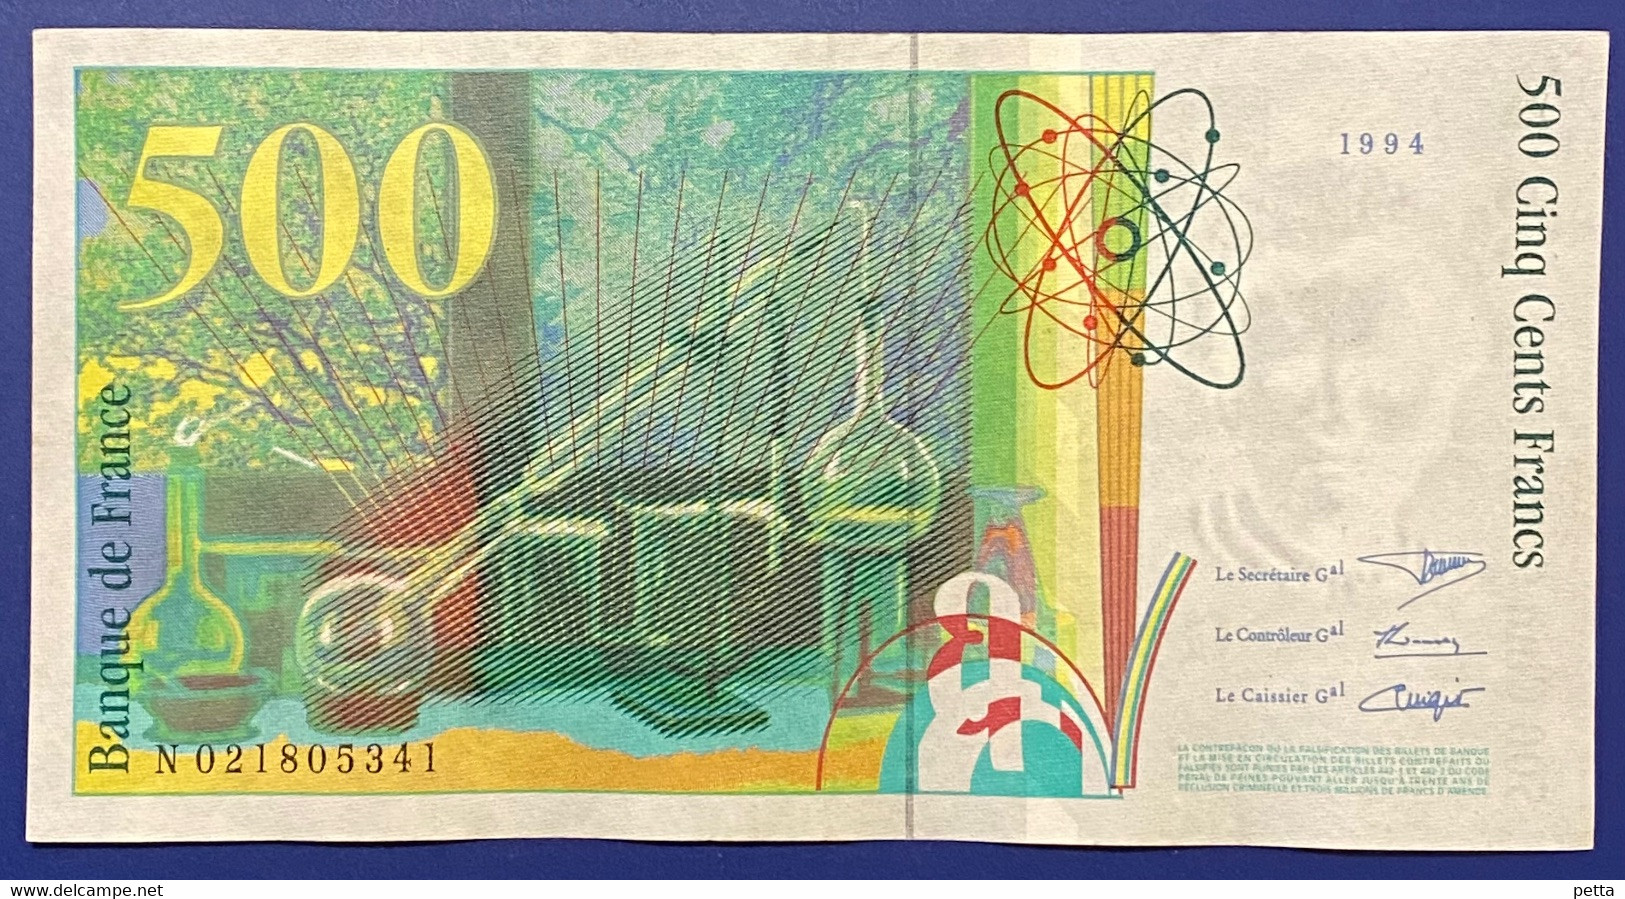 Billet De 500 Francs Pierre Et Marie Curie De 1994 / Alph N 021805341 / Vendu En L’état - 500 F 1994-2000 ''Pierre Et Marie Curie''